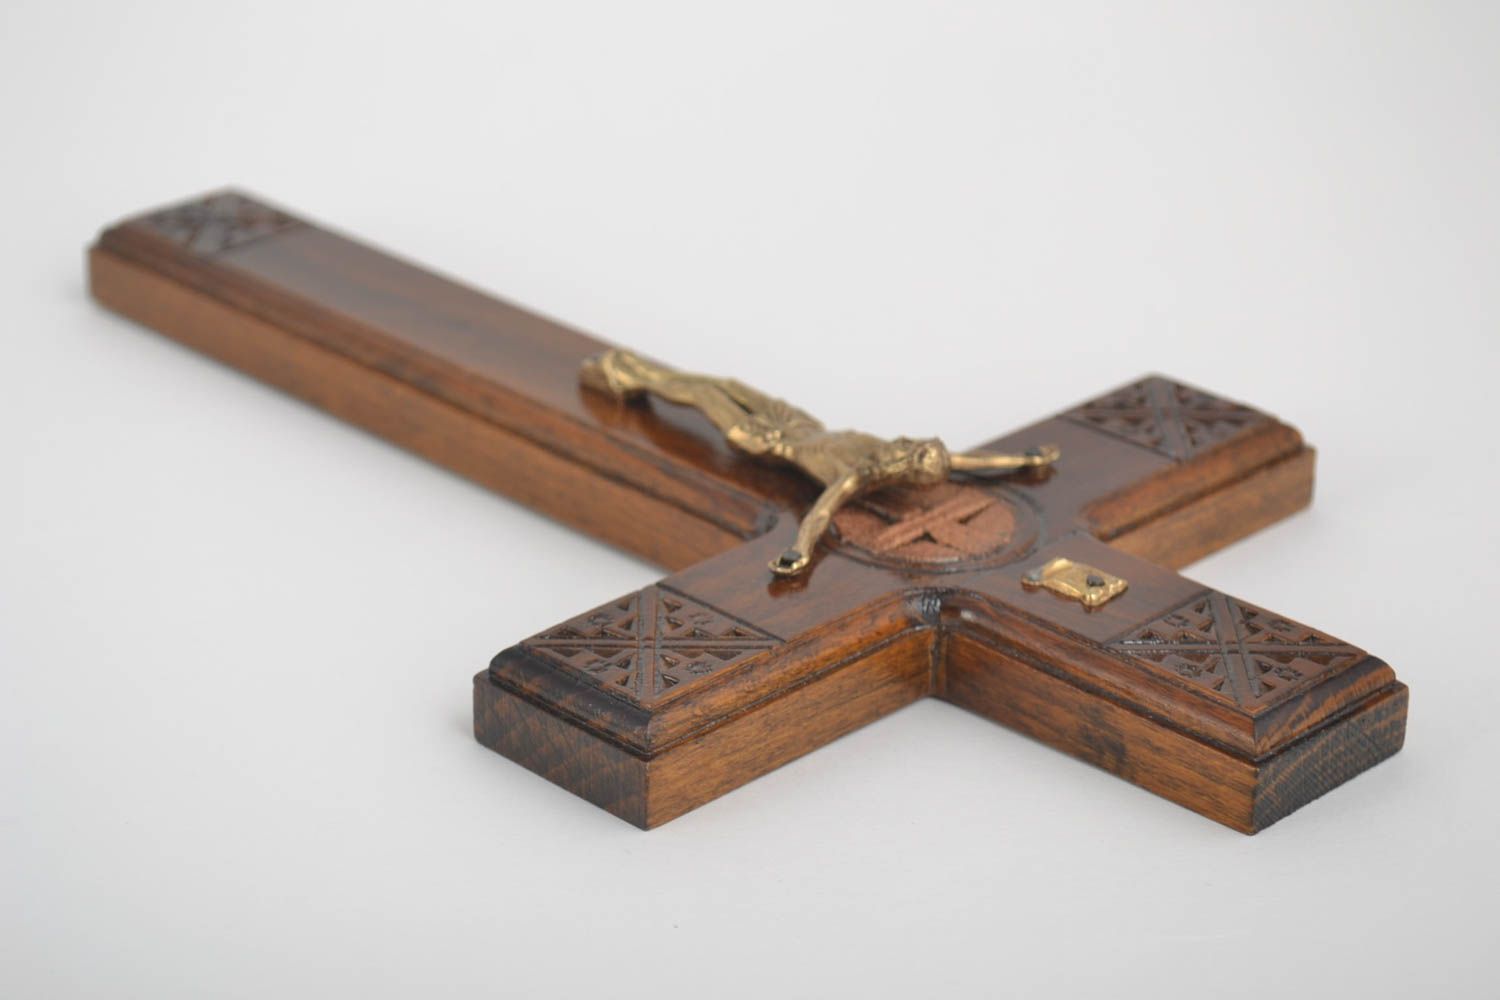 Cruz de madera hecho a mano artículo religioso original manualidad en madera foto 3